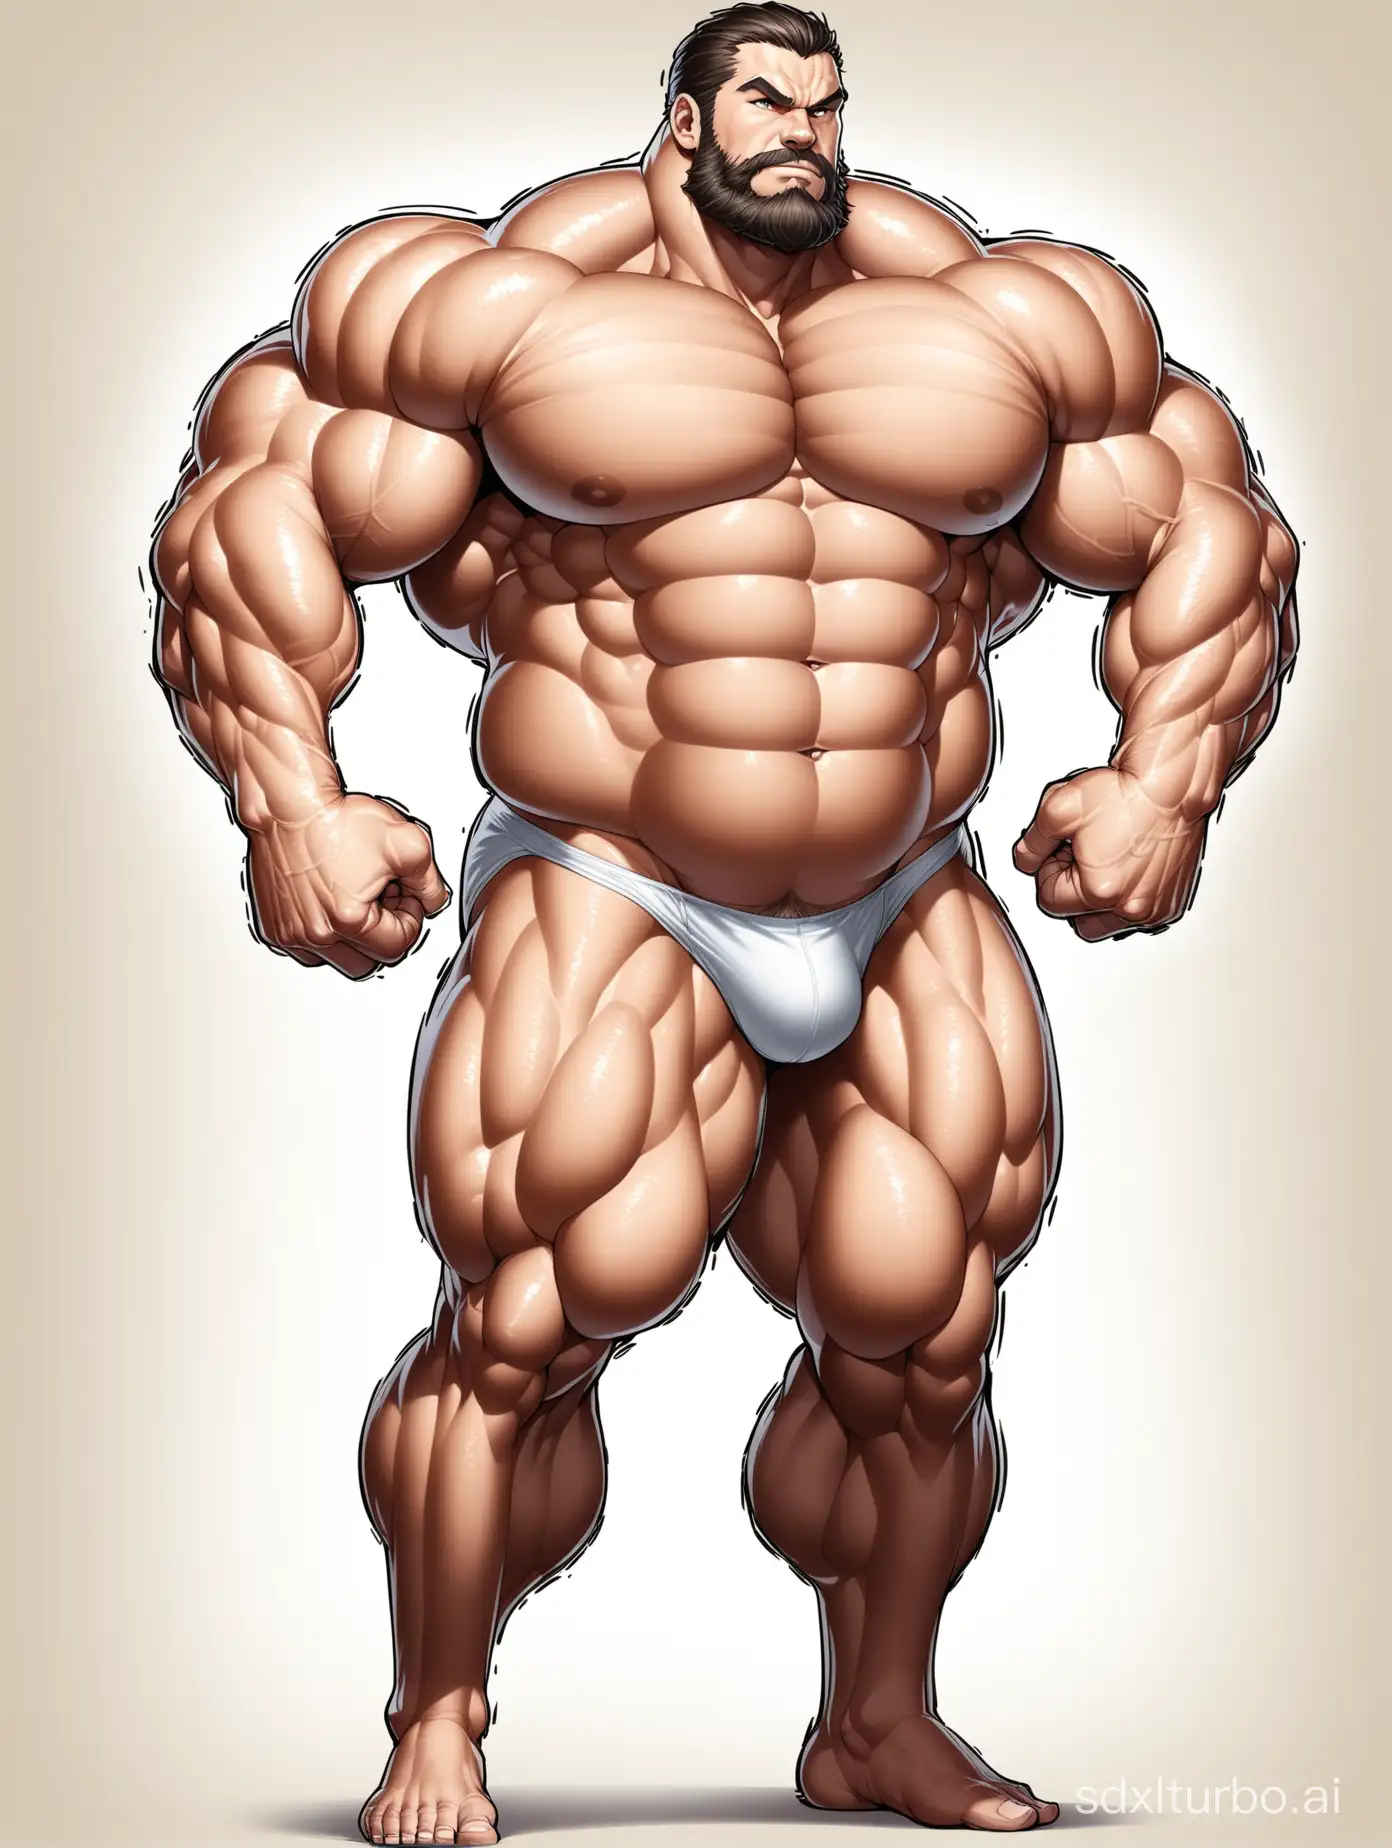 Massive-Muscle-Stud-Flexing-Biceps-in-White-Underwear